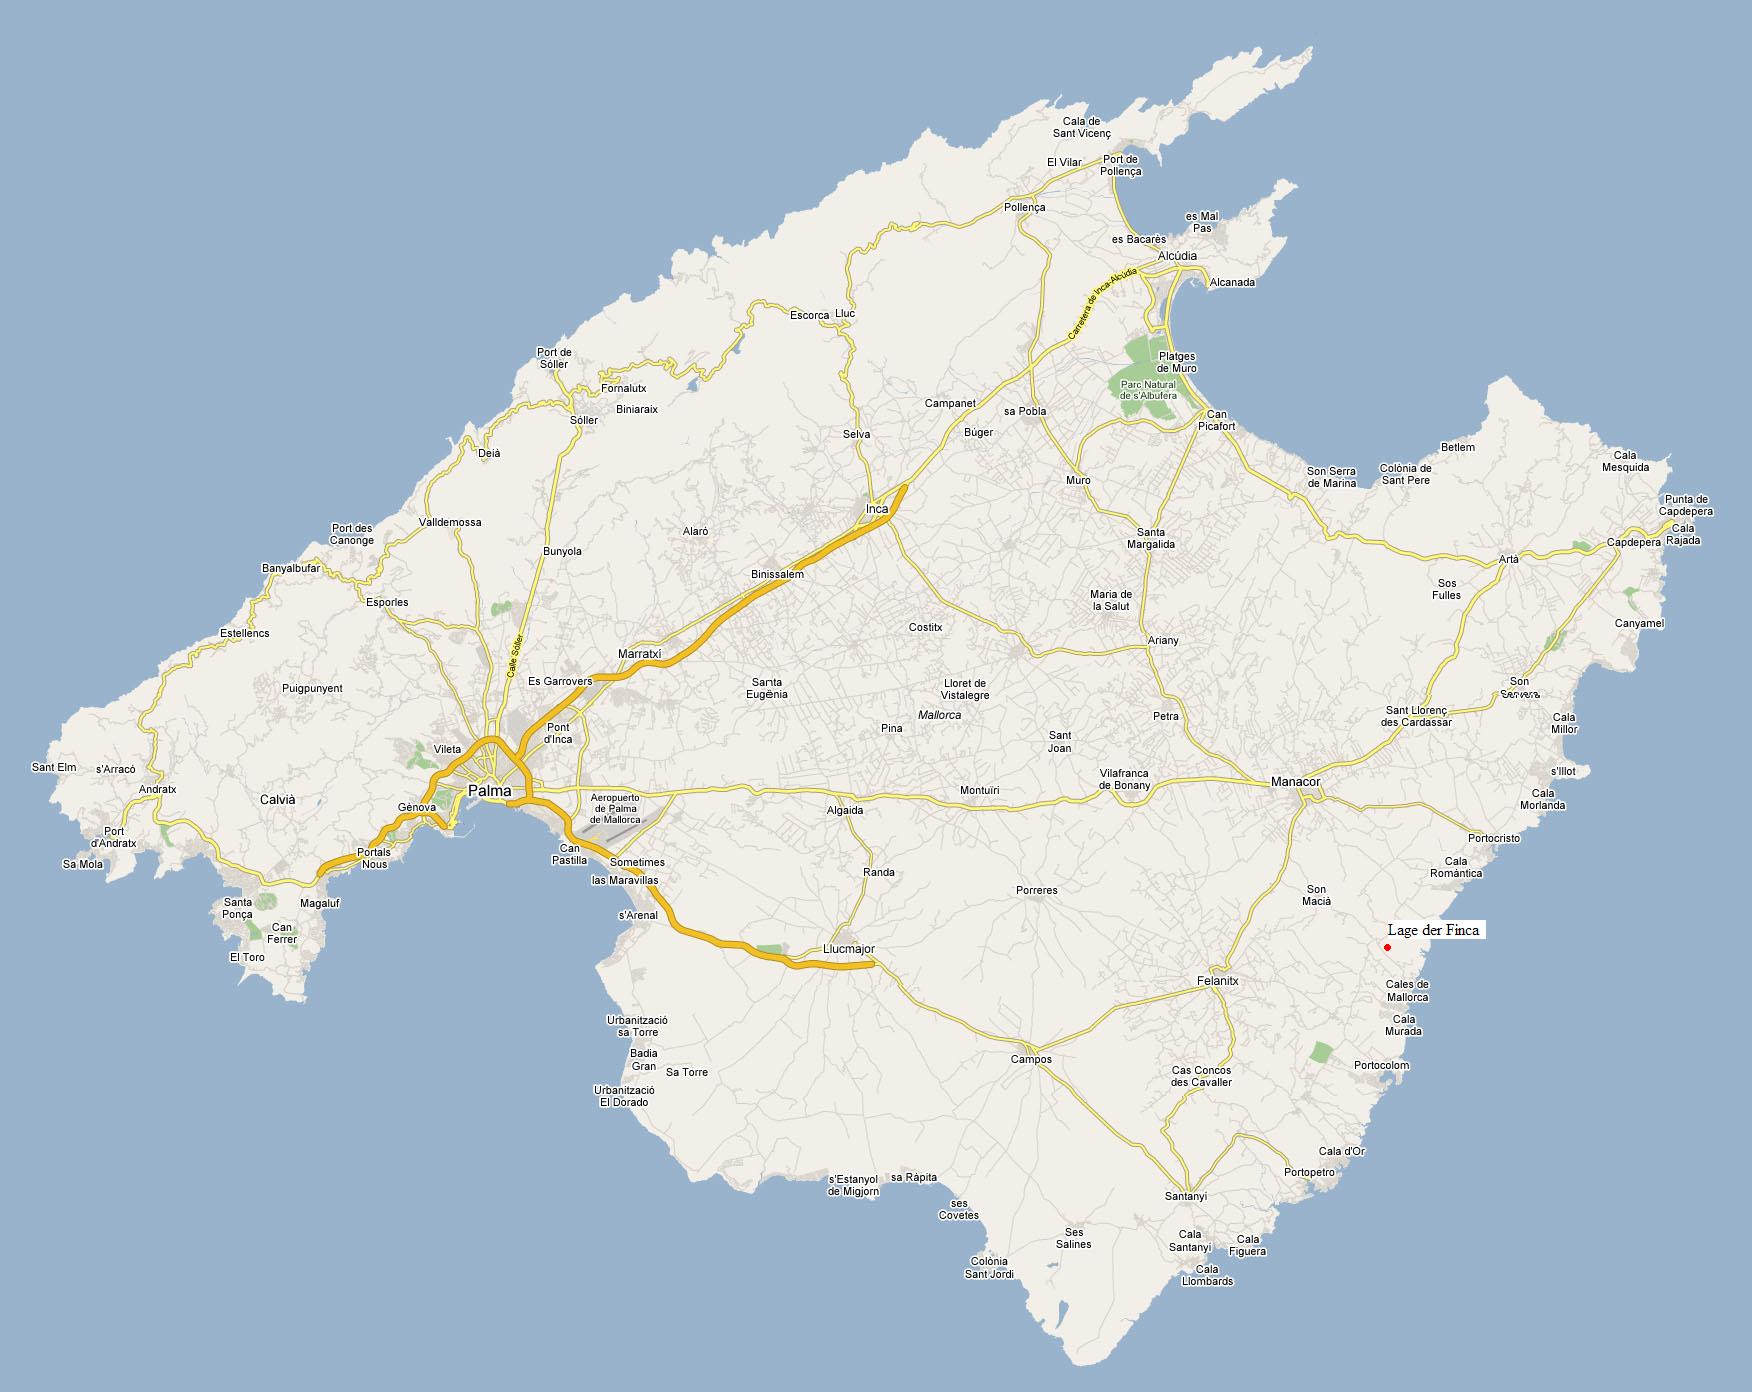 Karte von Mallorca - entnommen bei Google Maps